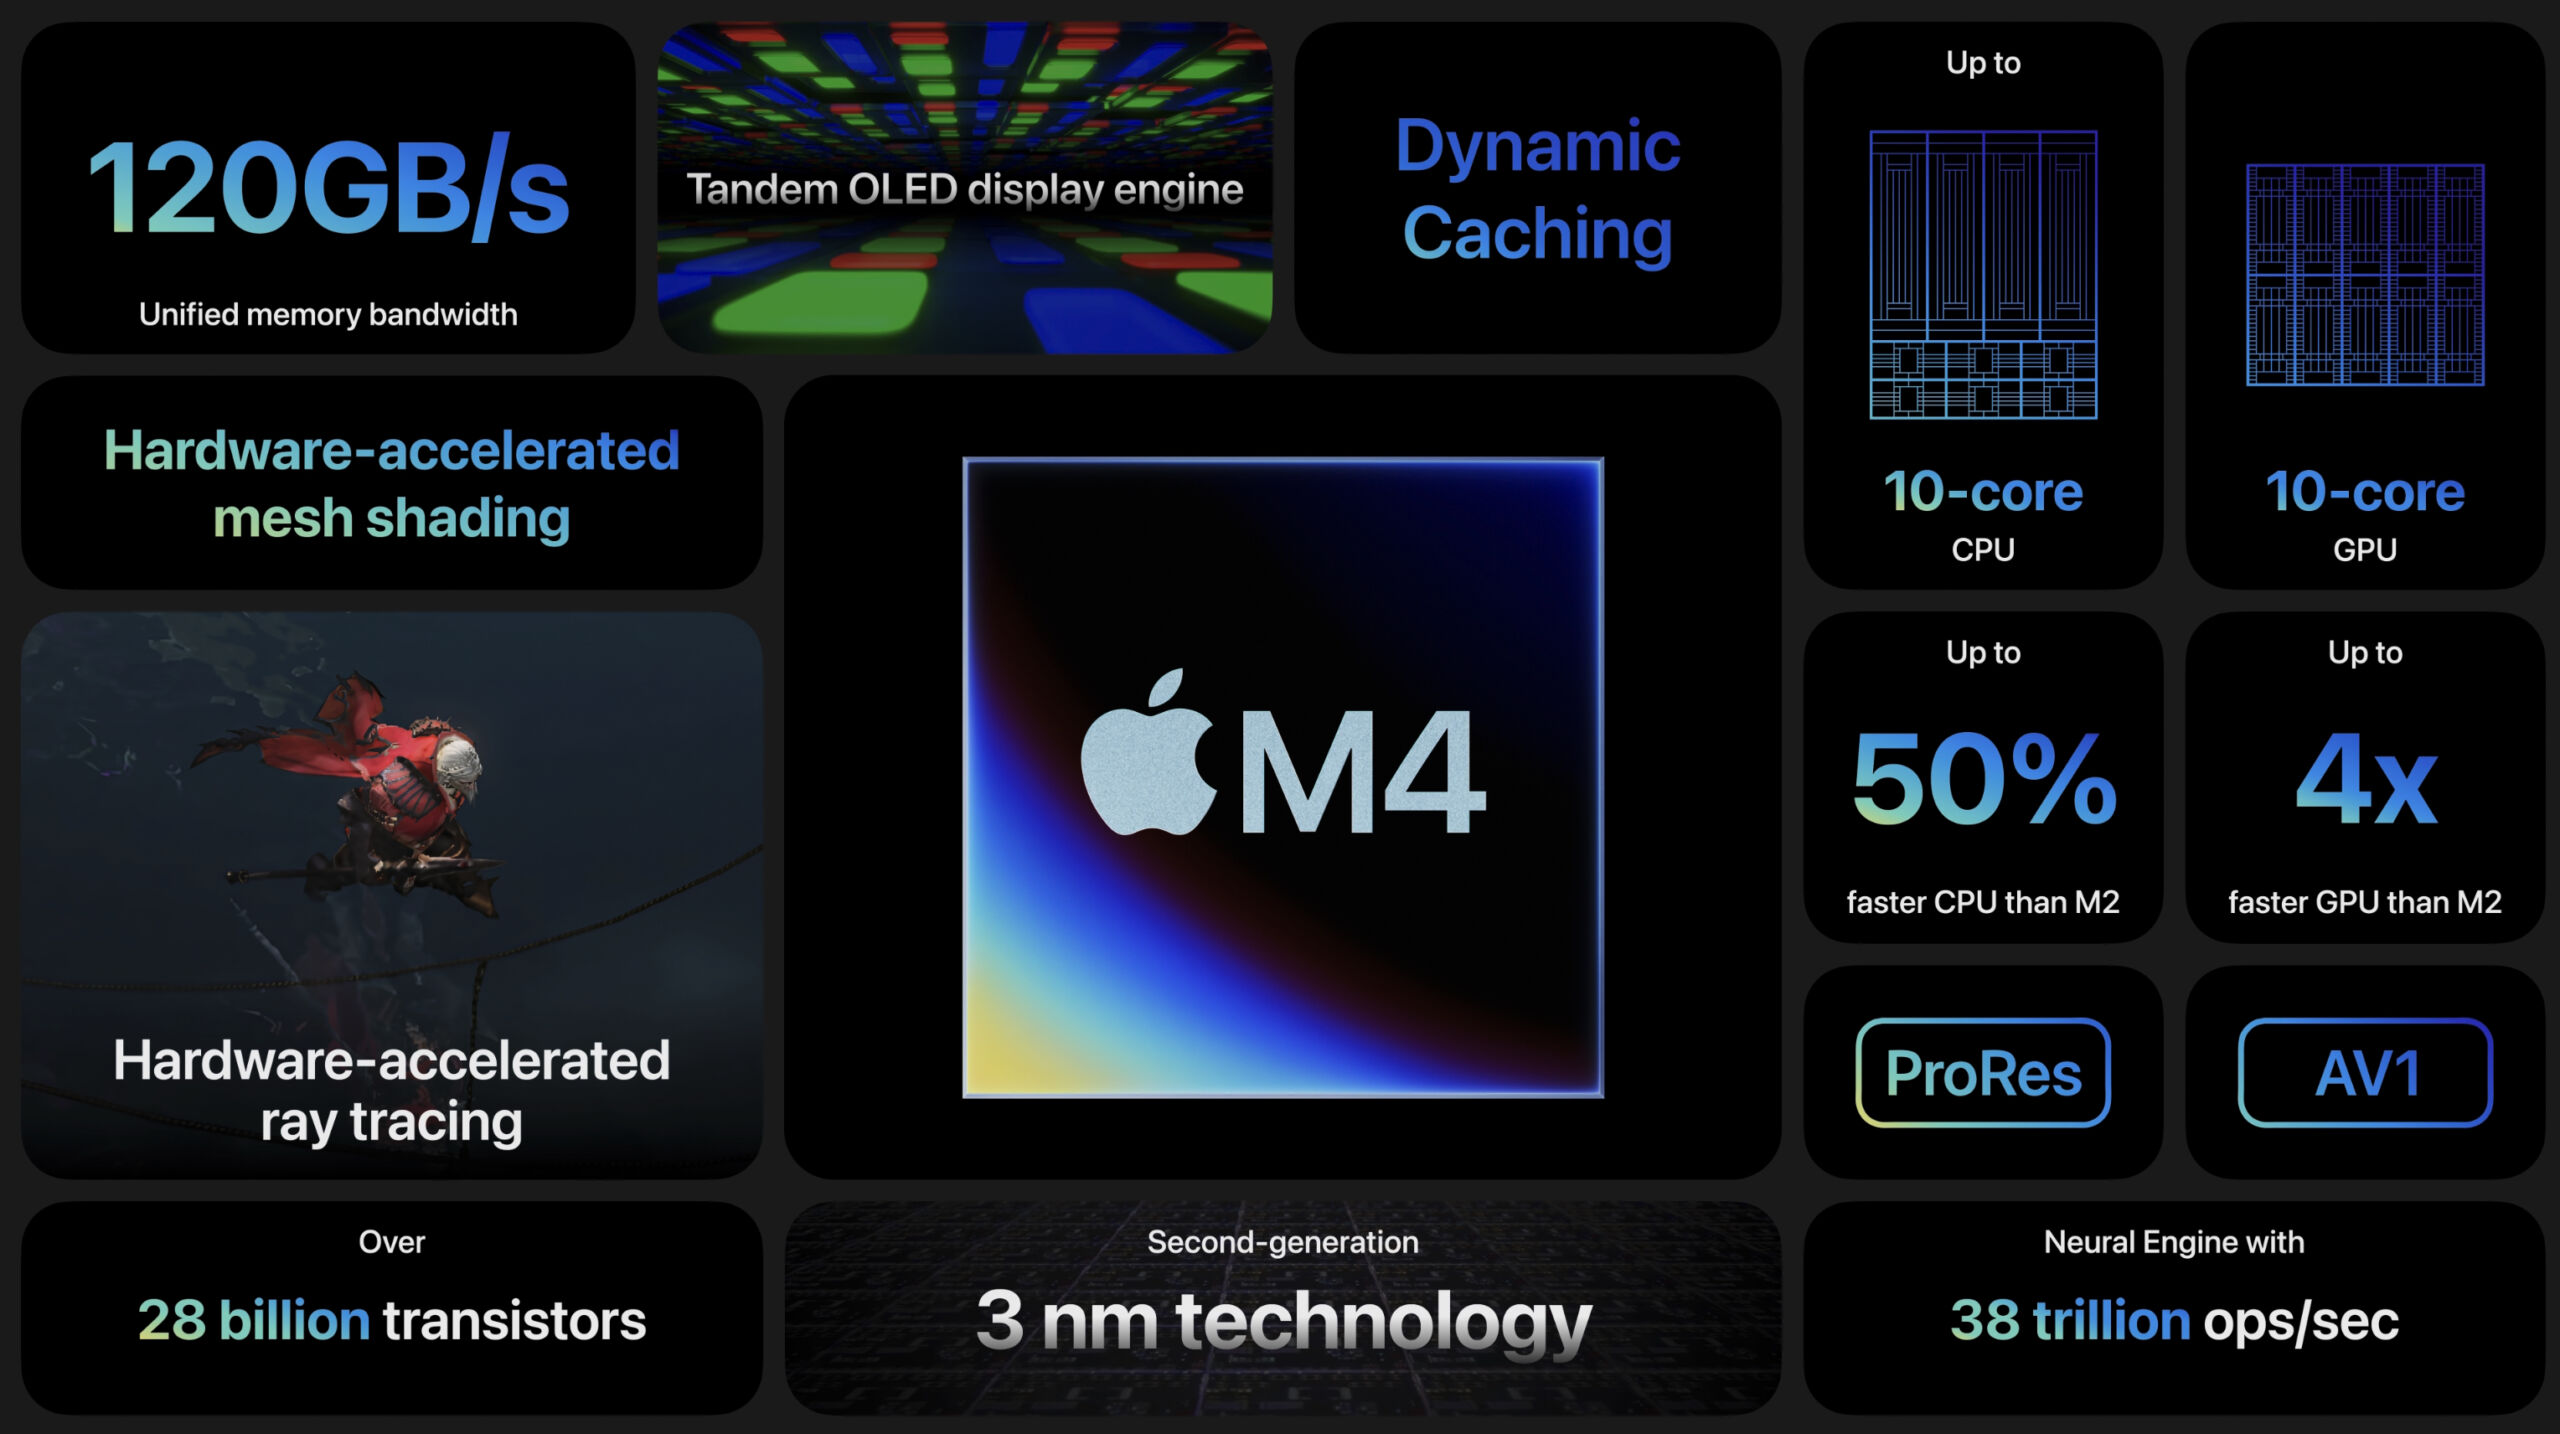 iPad Pro sử dụng chipset M4 mạnh nhất của Apple hiện nay (Ảnh: Internet)